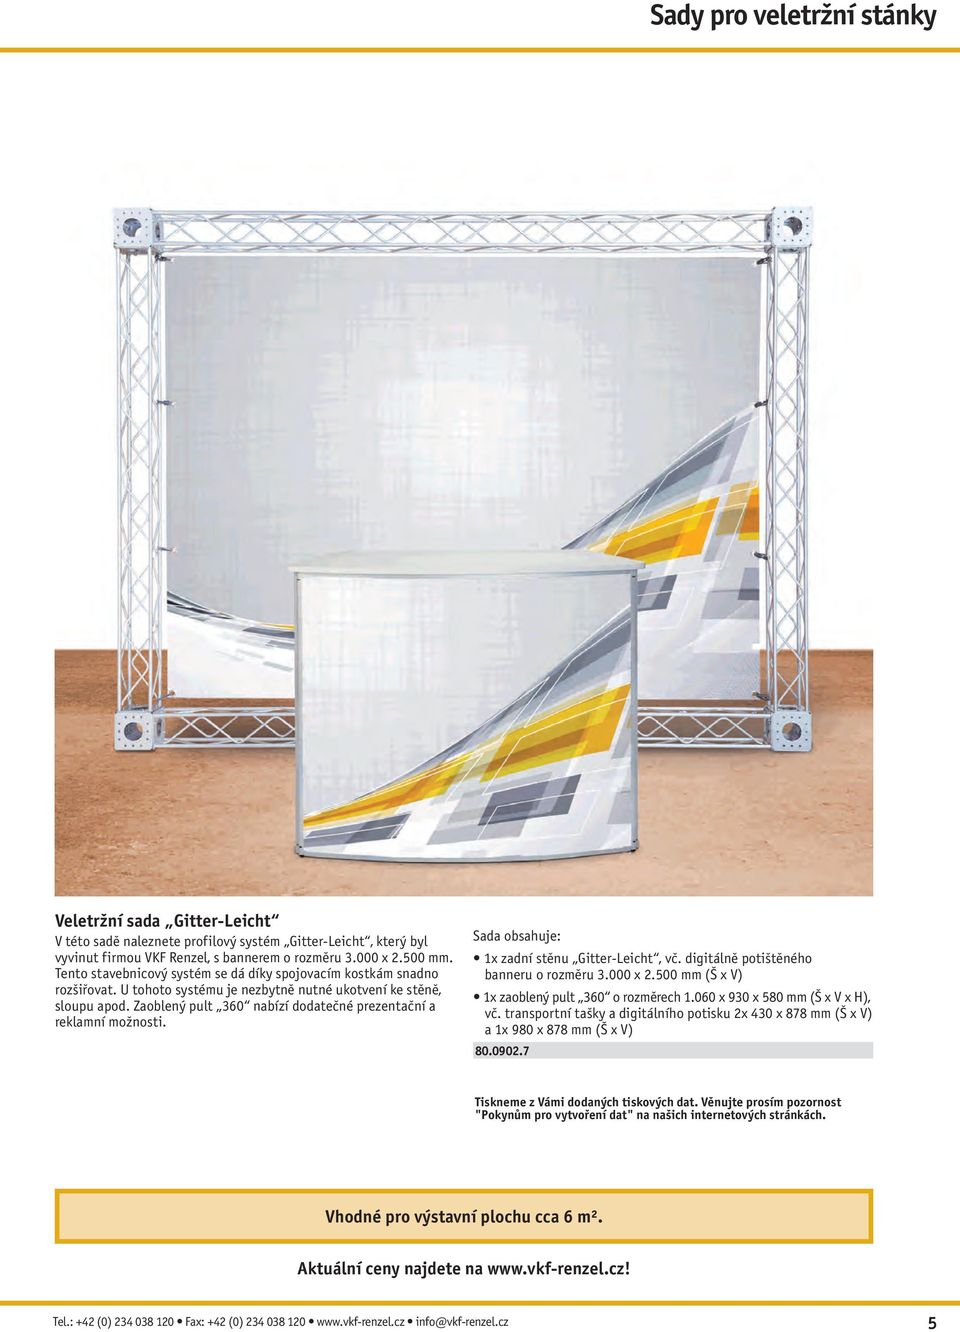 Zaoblený pult 360 nabízí dodatečné prezentační a reklamní možnosti. 1x zadní stěnu Gitter-Leicht, vč. digitálně potištěného banneru o rozměru 3.000 x 2.